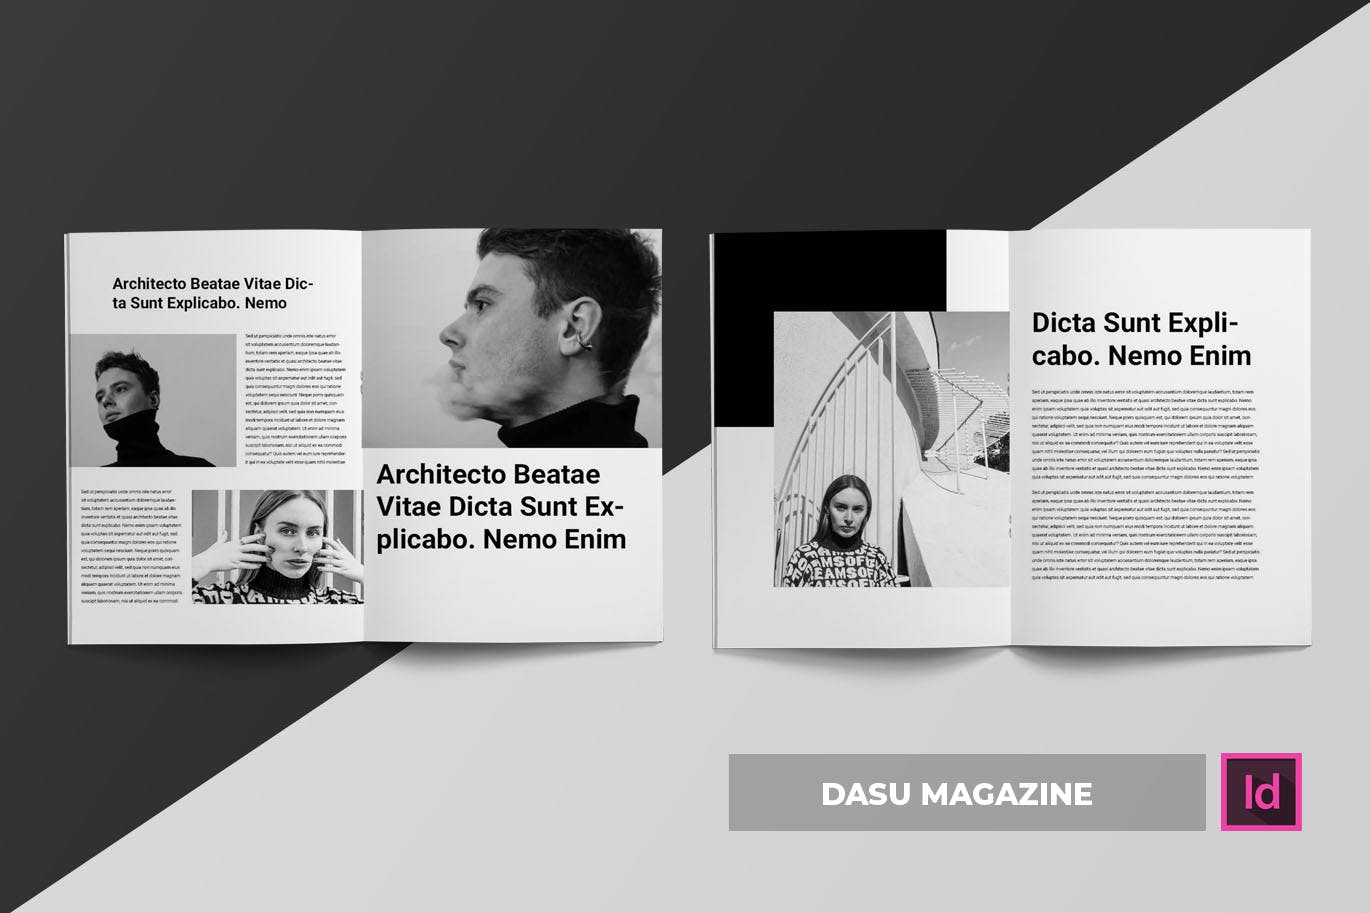 摄影艺术/时装设计主题素材库精选杂志排版设计模板 Dasu | Magazine Template插图(2)